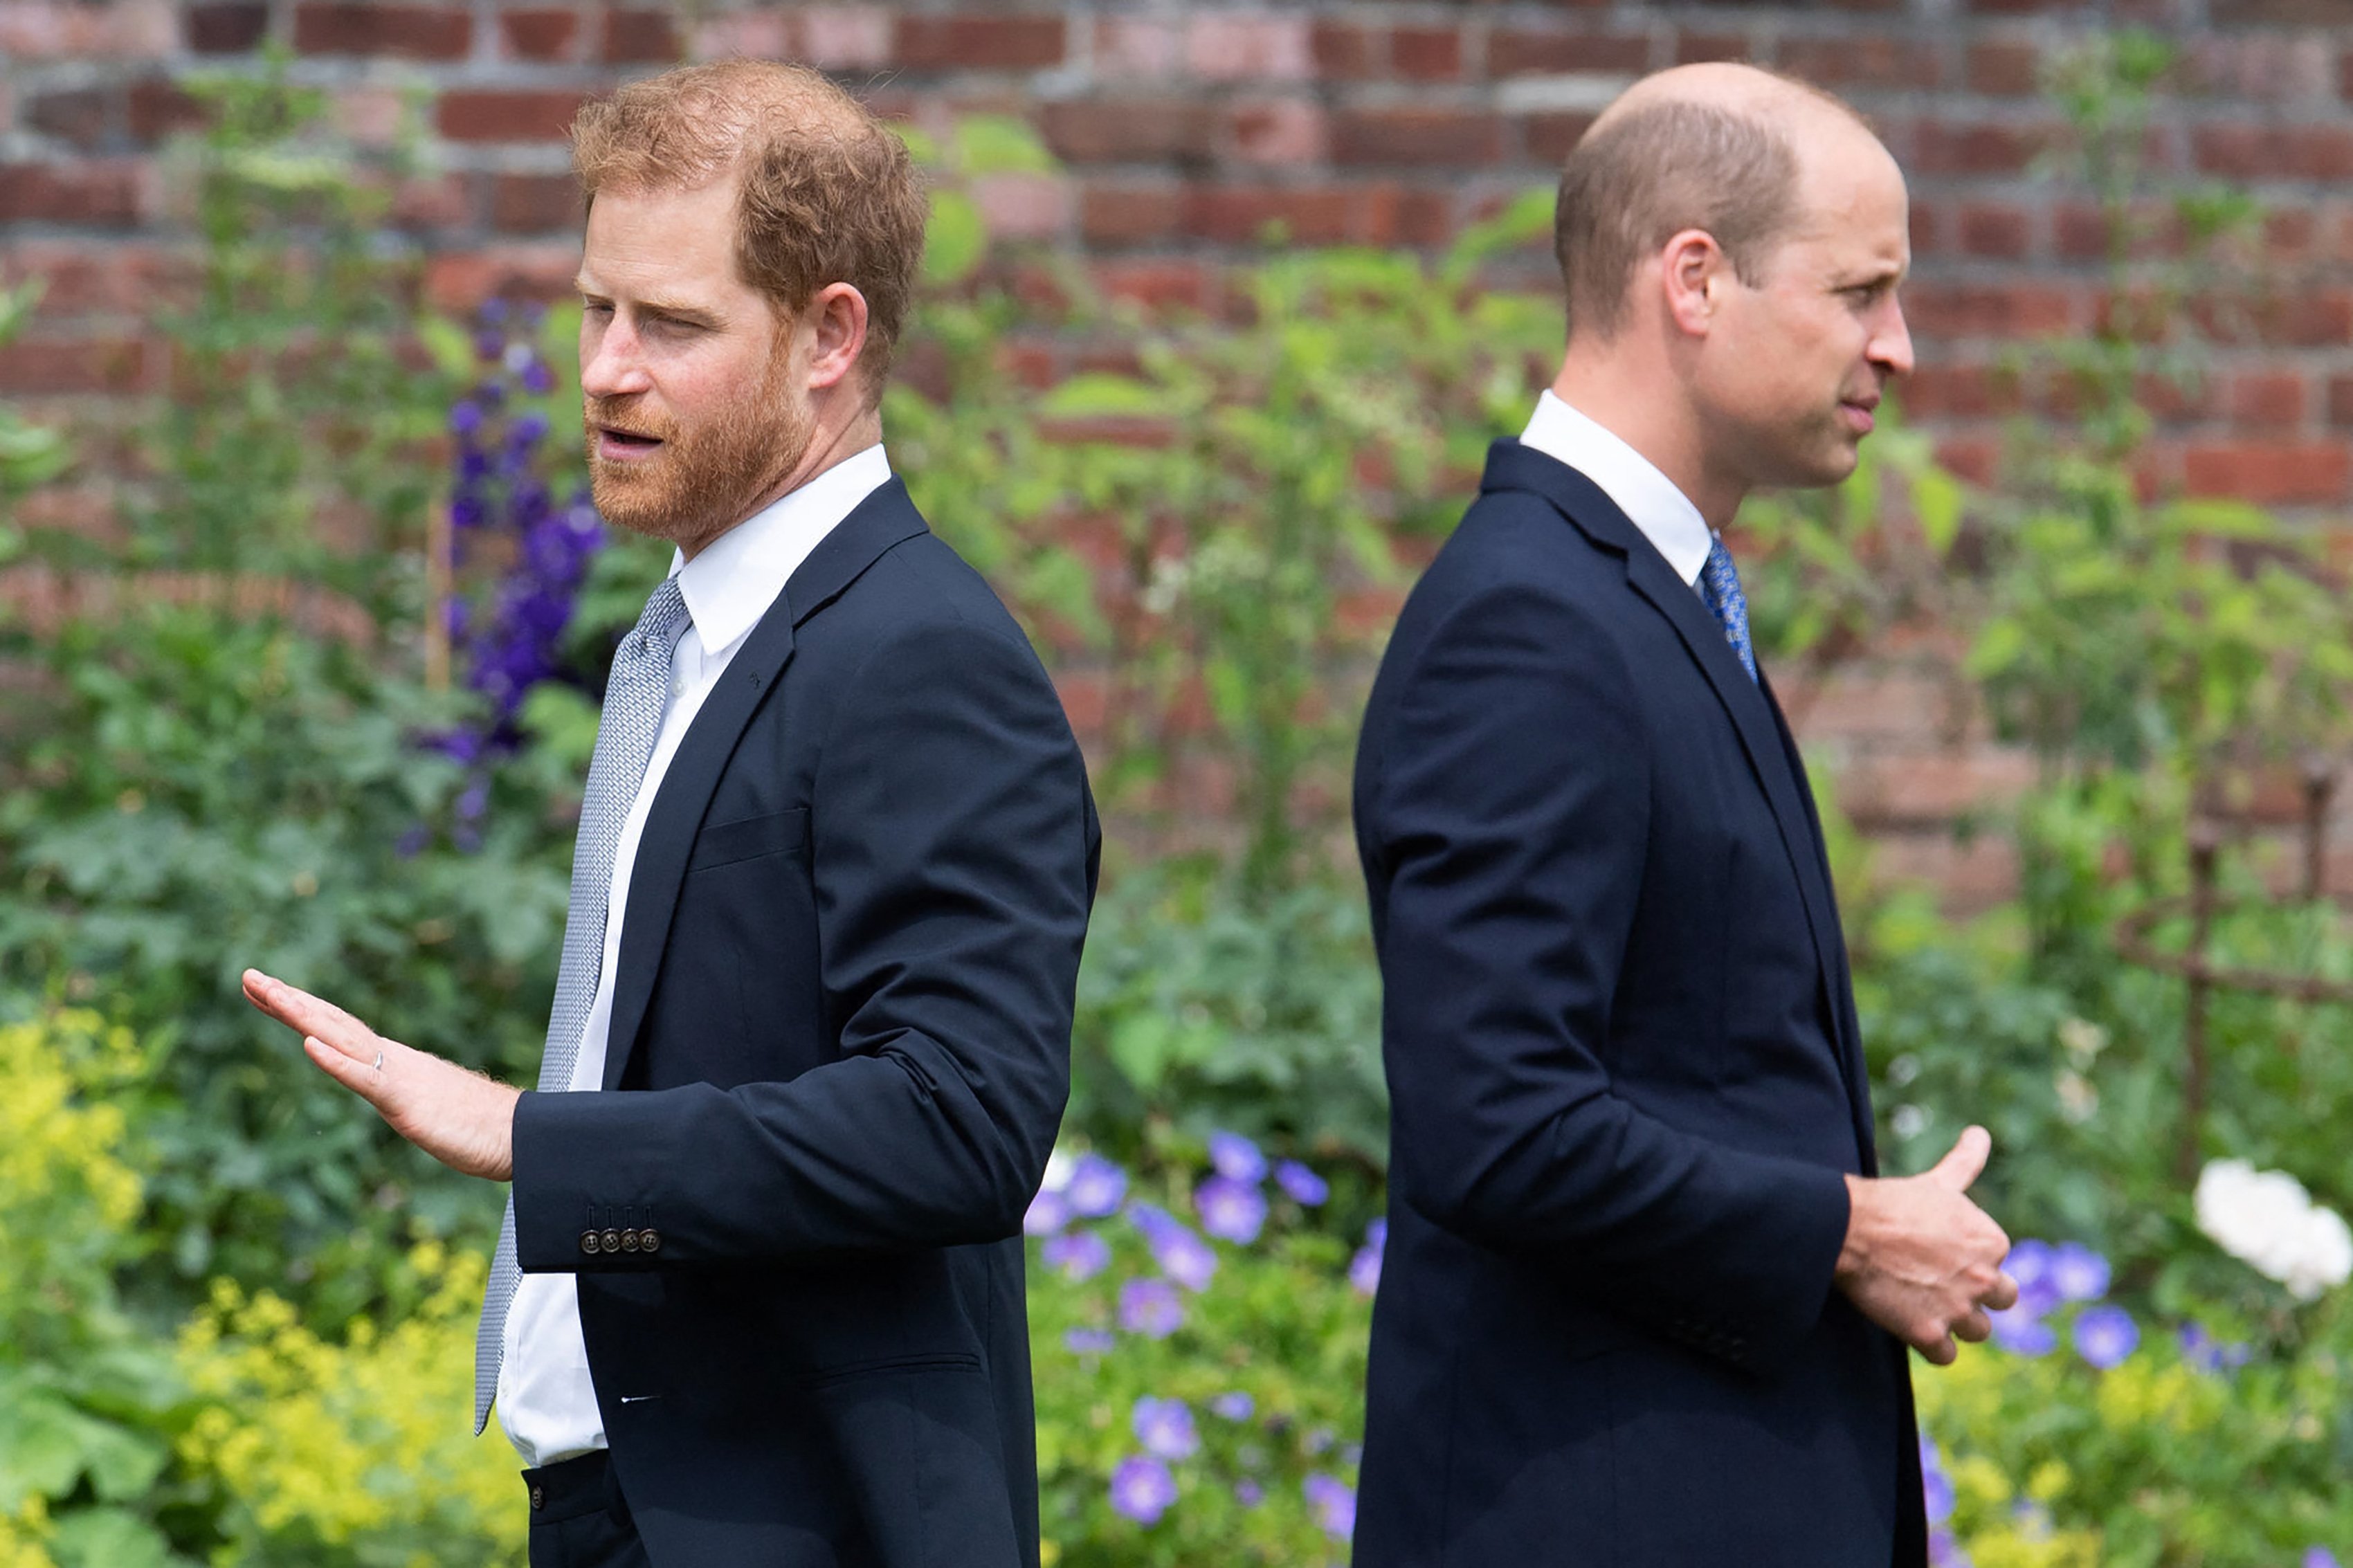 Prinz Harry, Herzog von Sussex, und sein Bruder Prinz William, Herzog von Cambridge, bei der Enthüllung einer Statue ihrer Mutter, Prinzessin Diana, im versunkenen Garten am 1. Juli 2021 im Kensington Palace, London. | Quelle: Getty Images